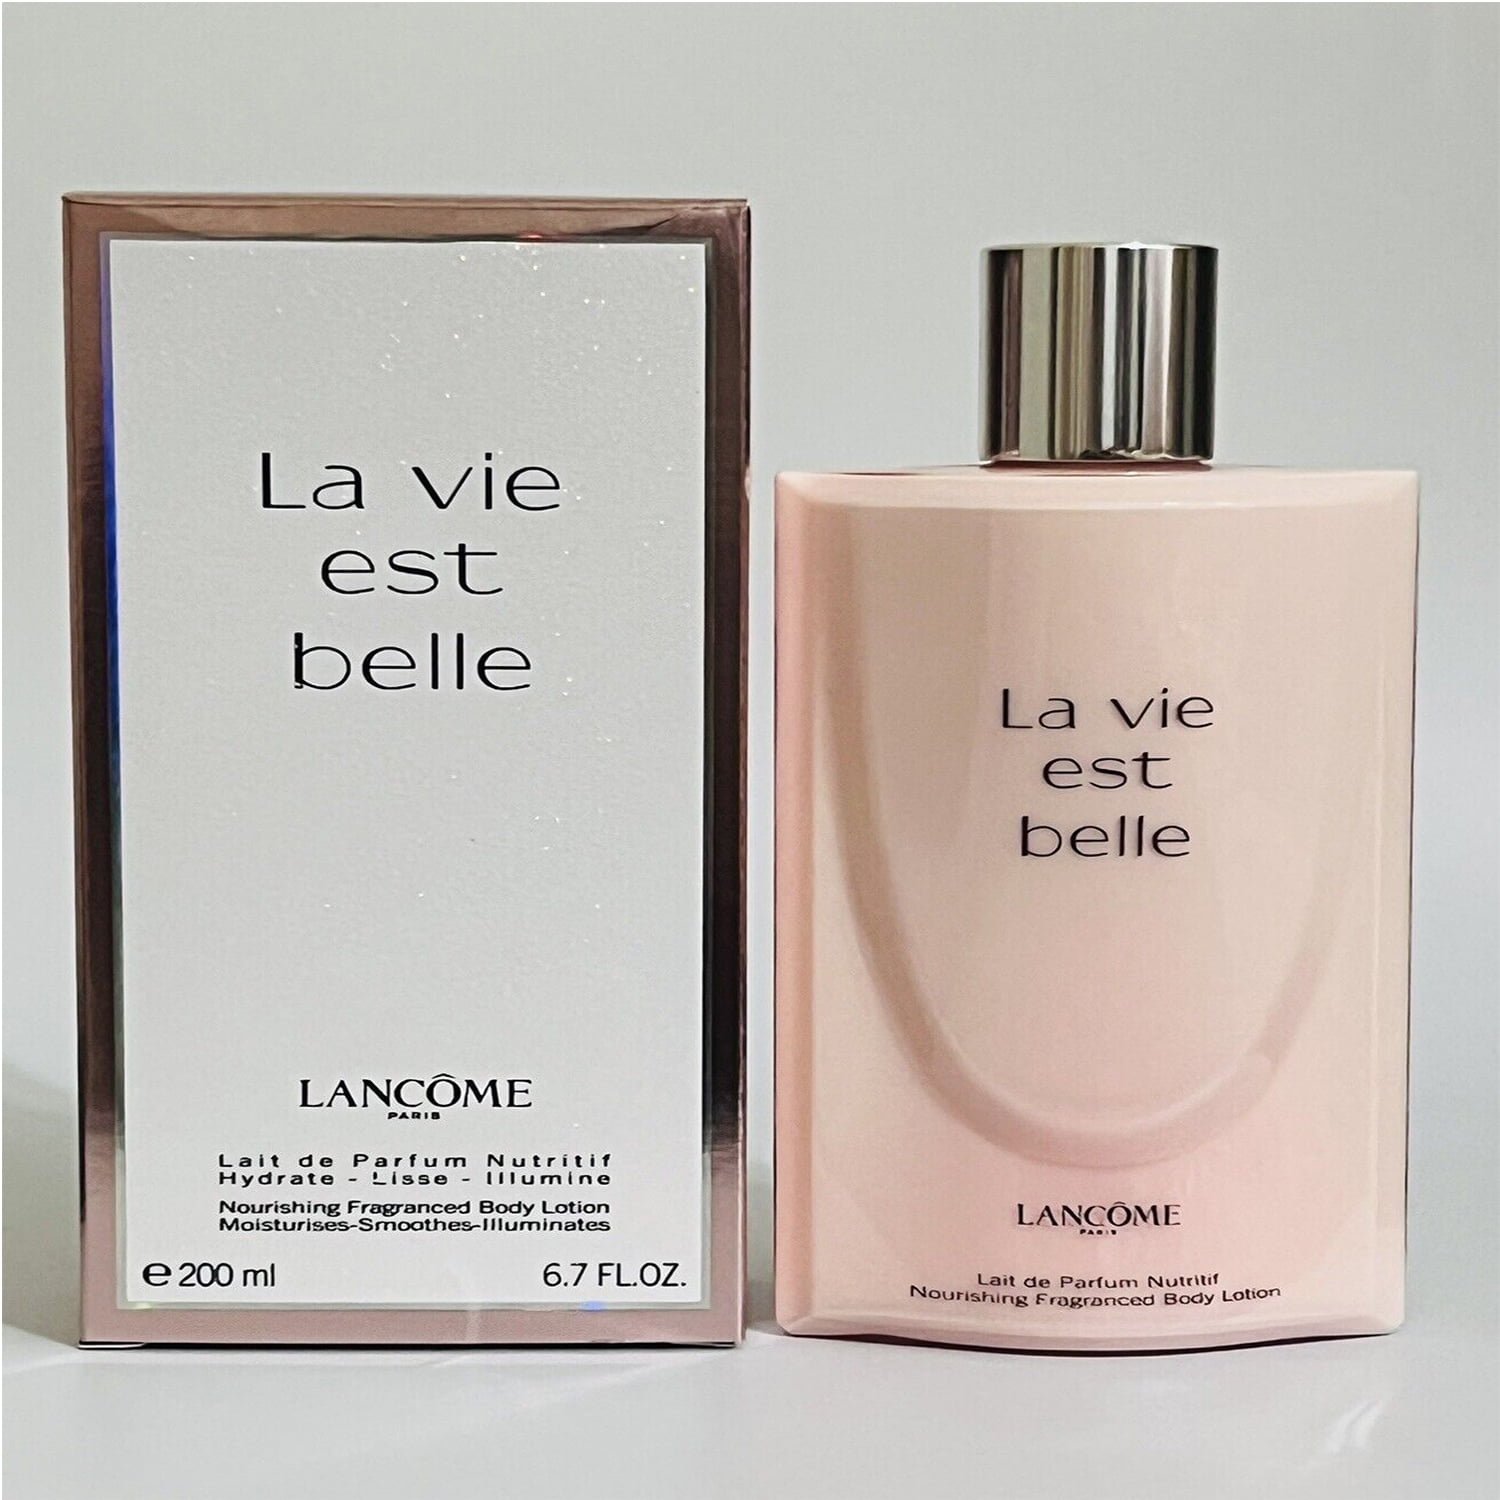 Lancome La Vie Est Belle Lait de Parfum Nutritif Nourishing Fragranced Lotion 200 ml / 6.7 oz - Walmart.com